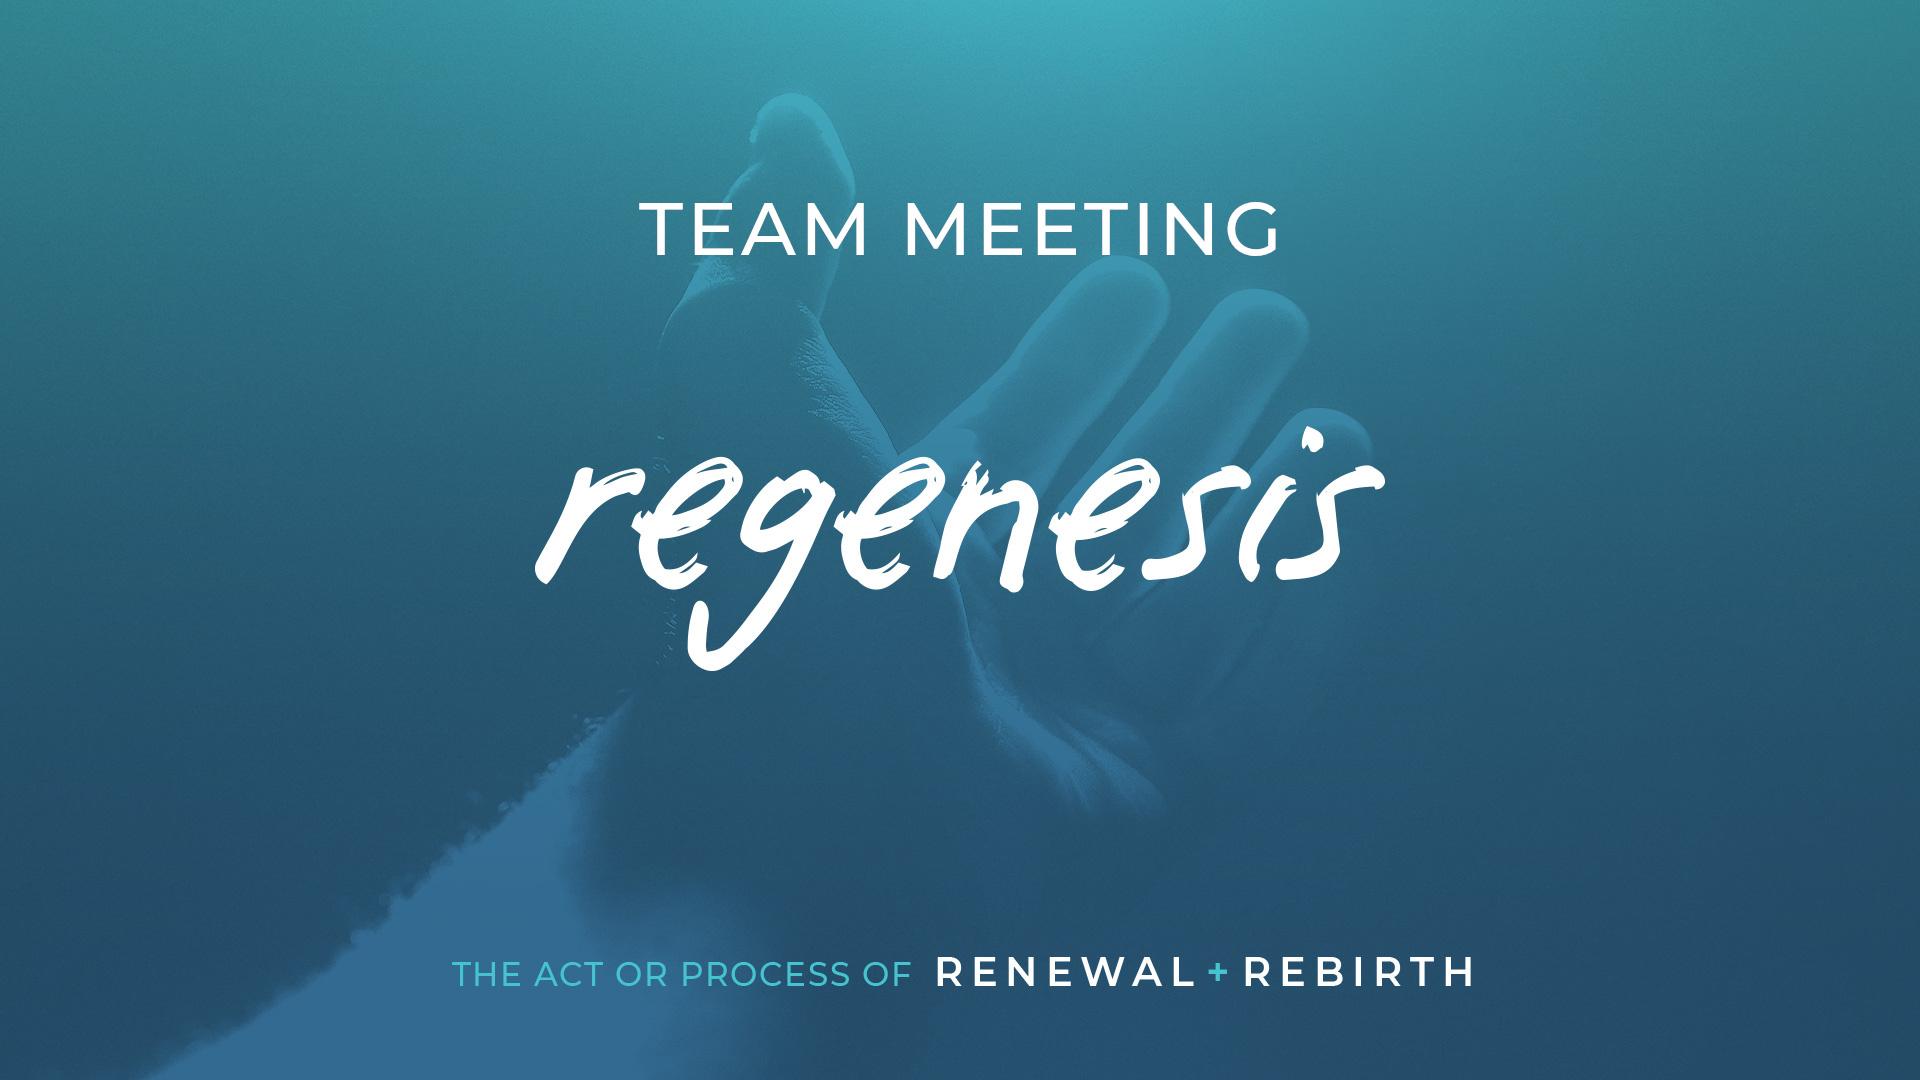 Regenesis Team Meeting information